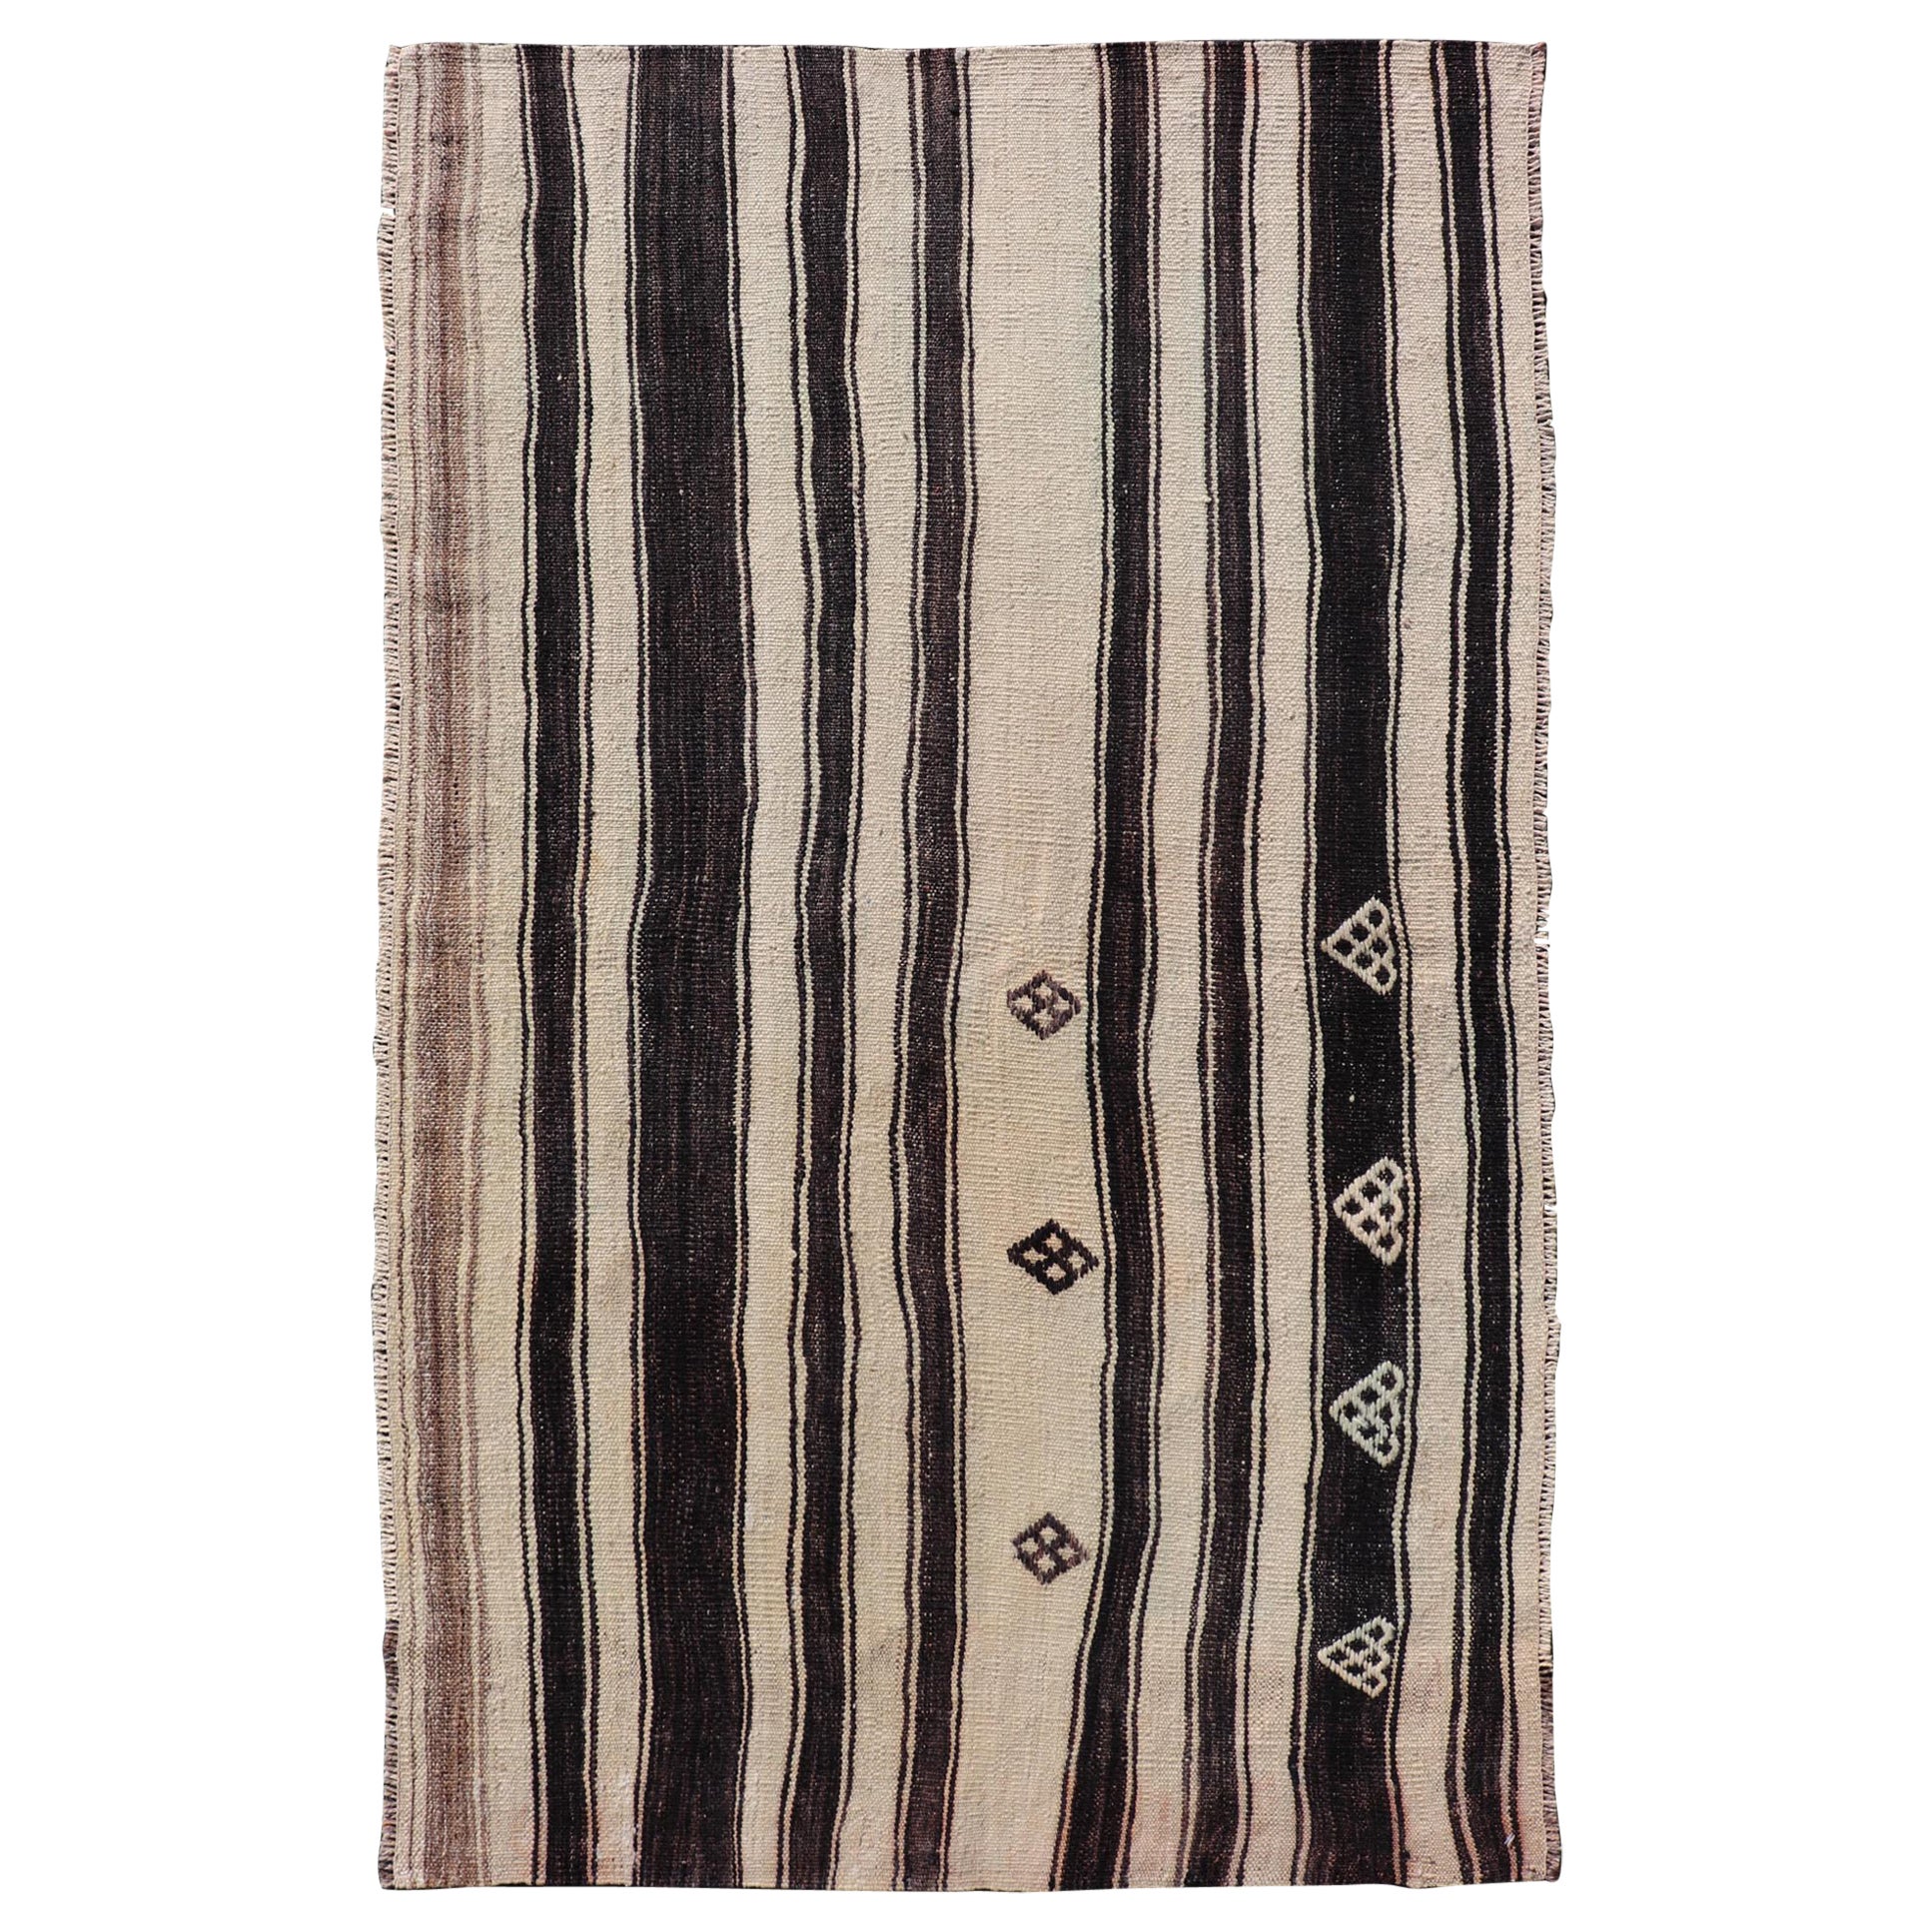 Türkischer Vintage-Flachgewebe-Teppich im Streifendesign in Dunkelbraun, Taupe und Creme 